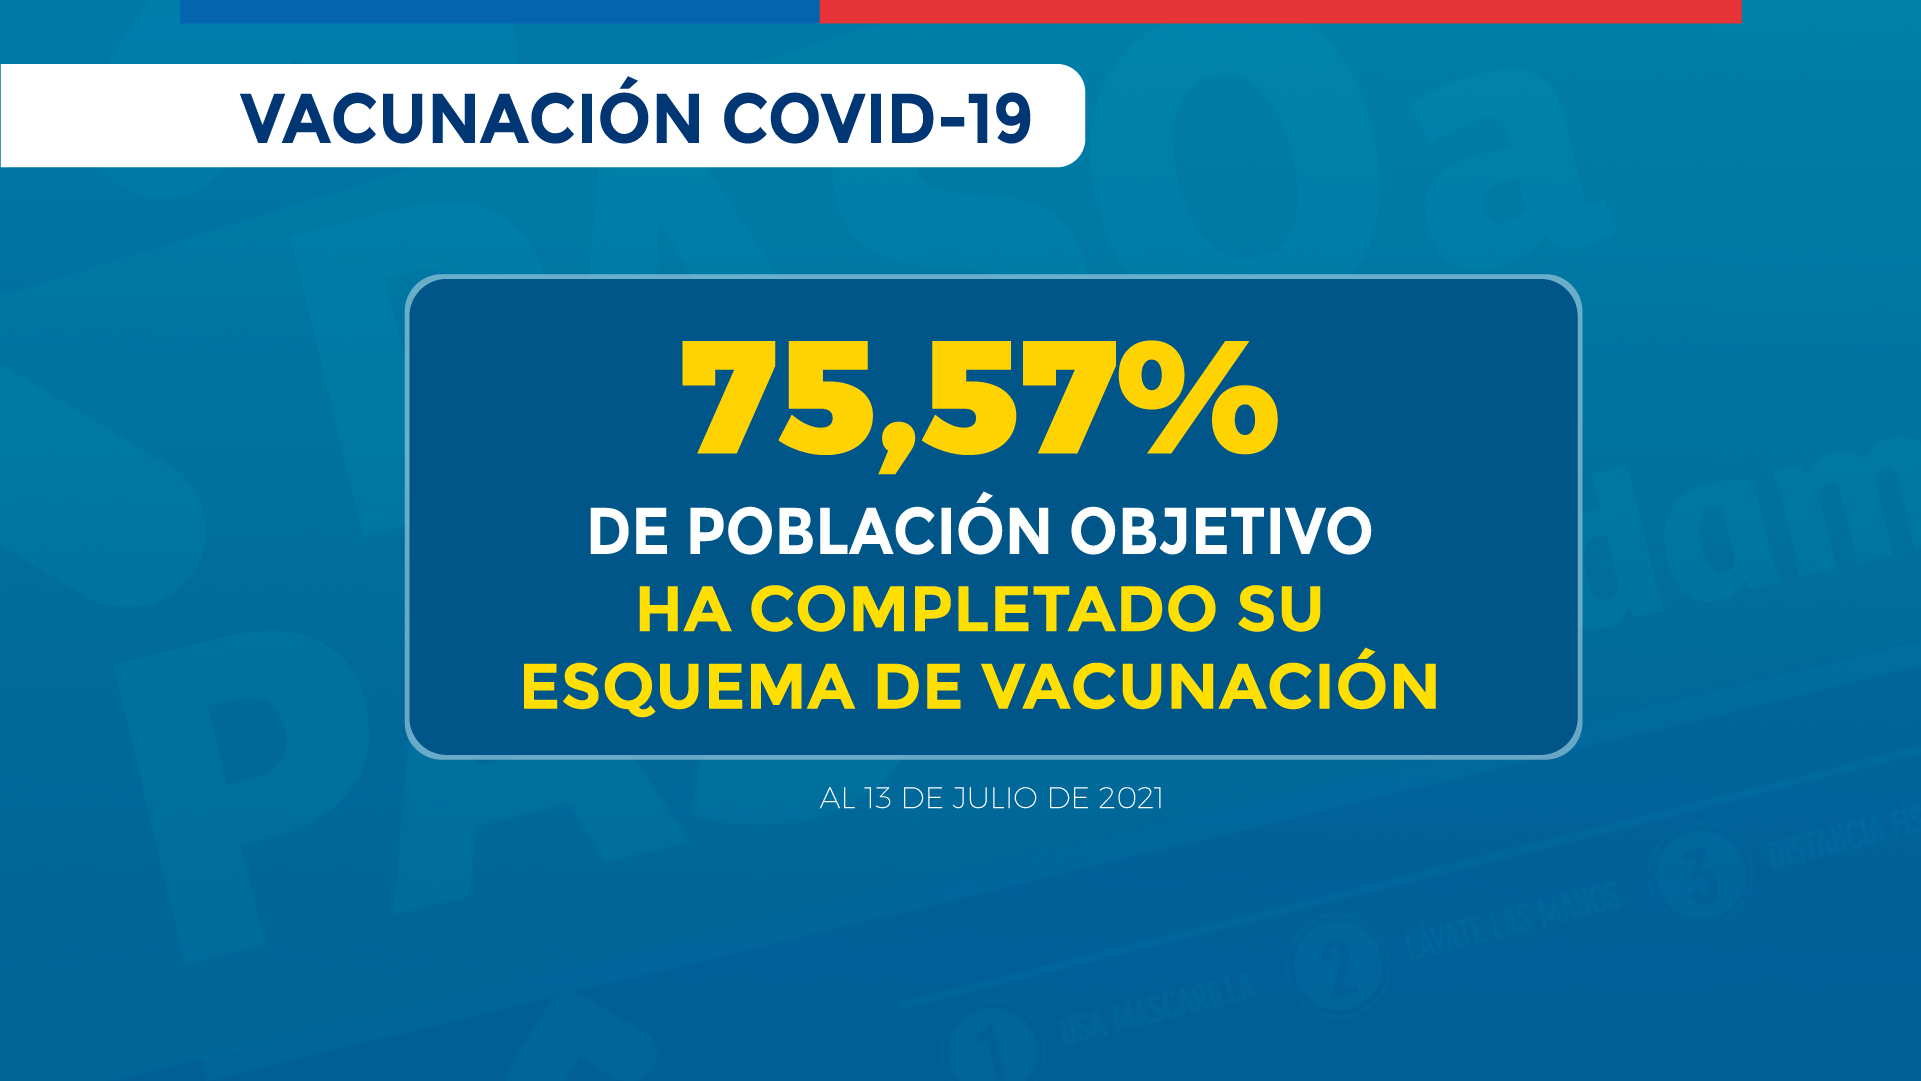 2021.07.14_REPORTE-VACUNACION-COVID_Porcentaje-vacunados-esquema-completo_2021.07.14.png